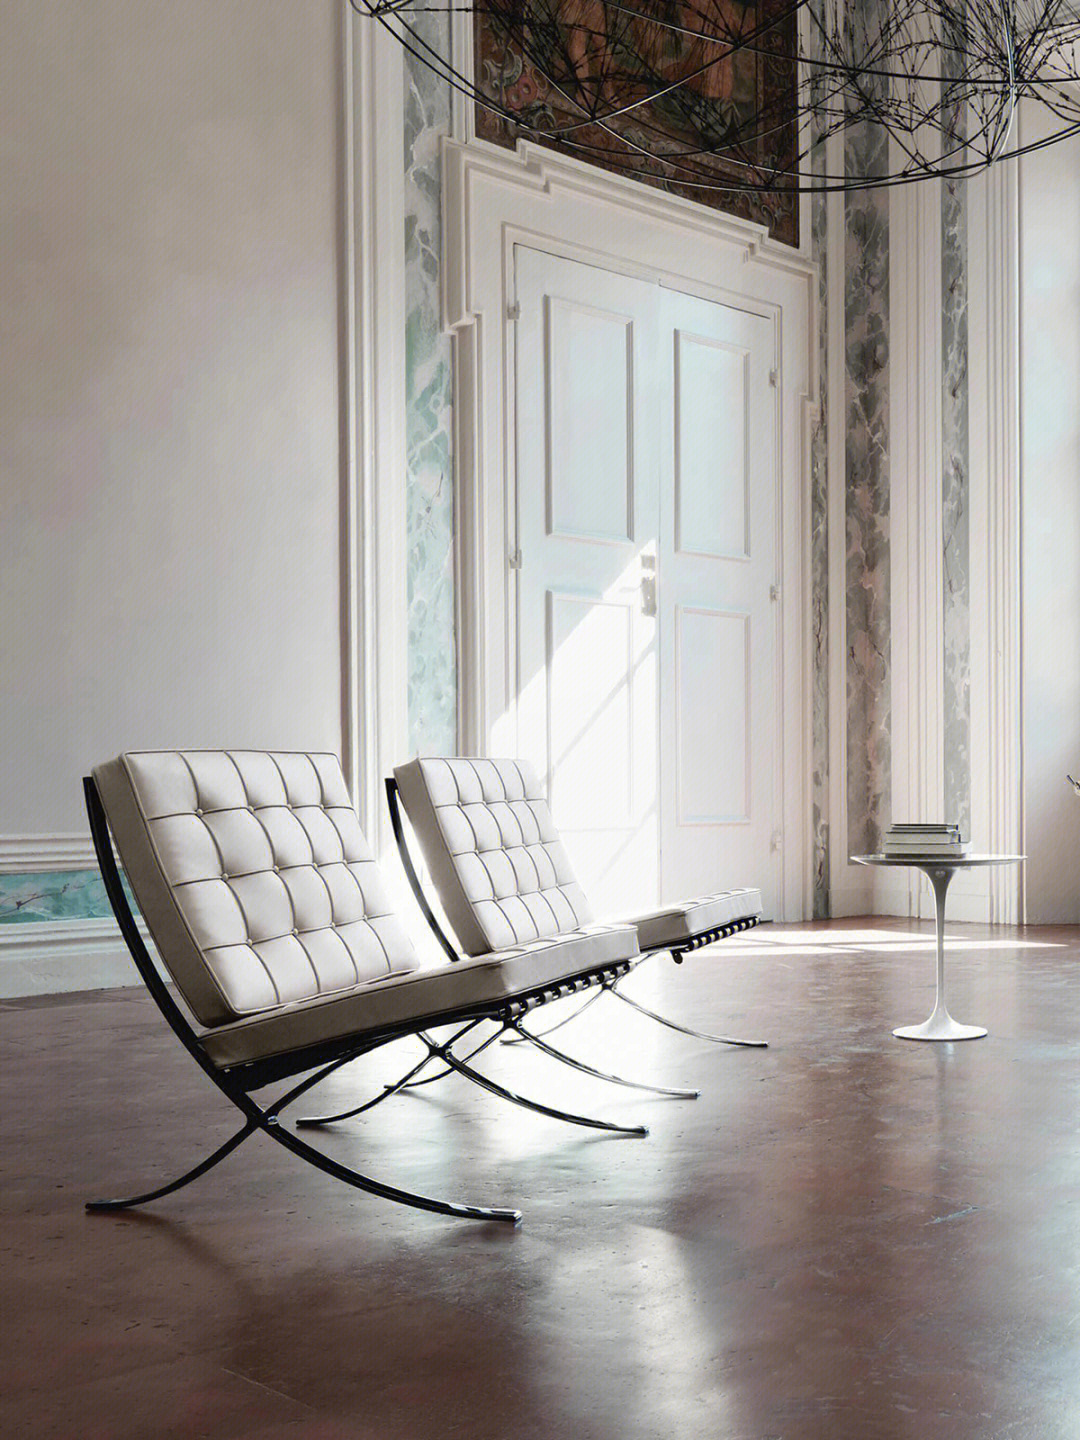 巴塞罗那椅的设计思想图片